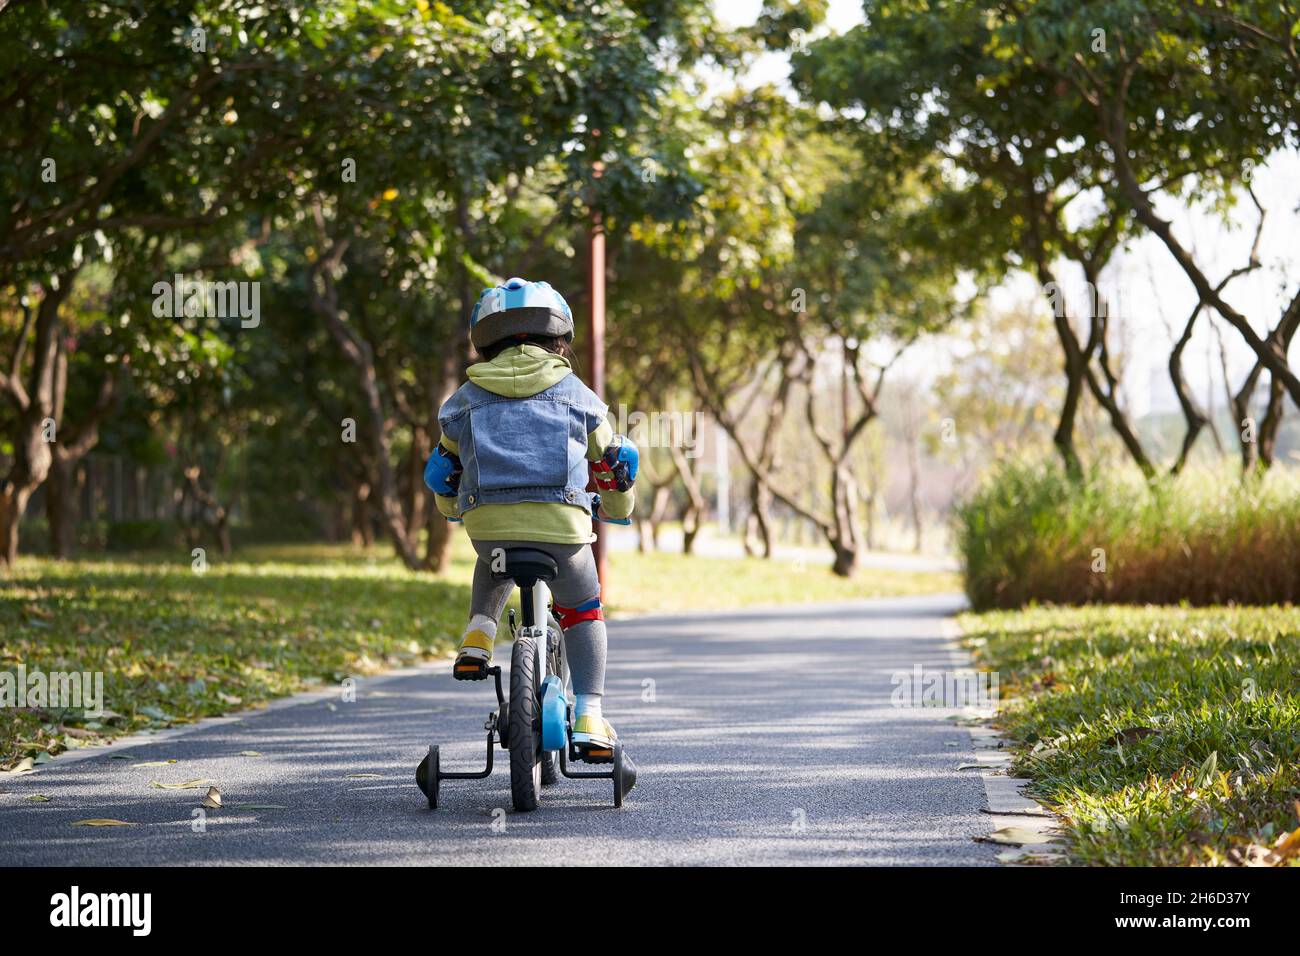 Rückansicht eines kleinen asiatischen Mädchen in voller Schutzausrüstung Fahrrad im Freien im Stadtpark fahren Stockfoto